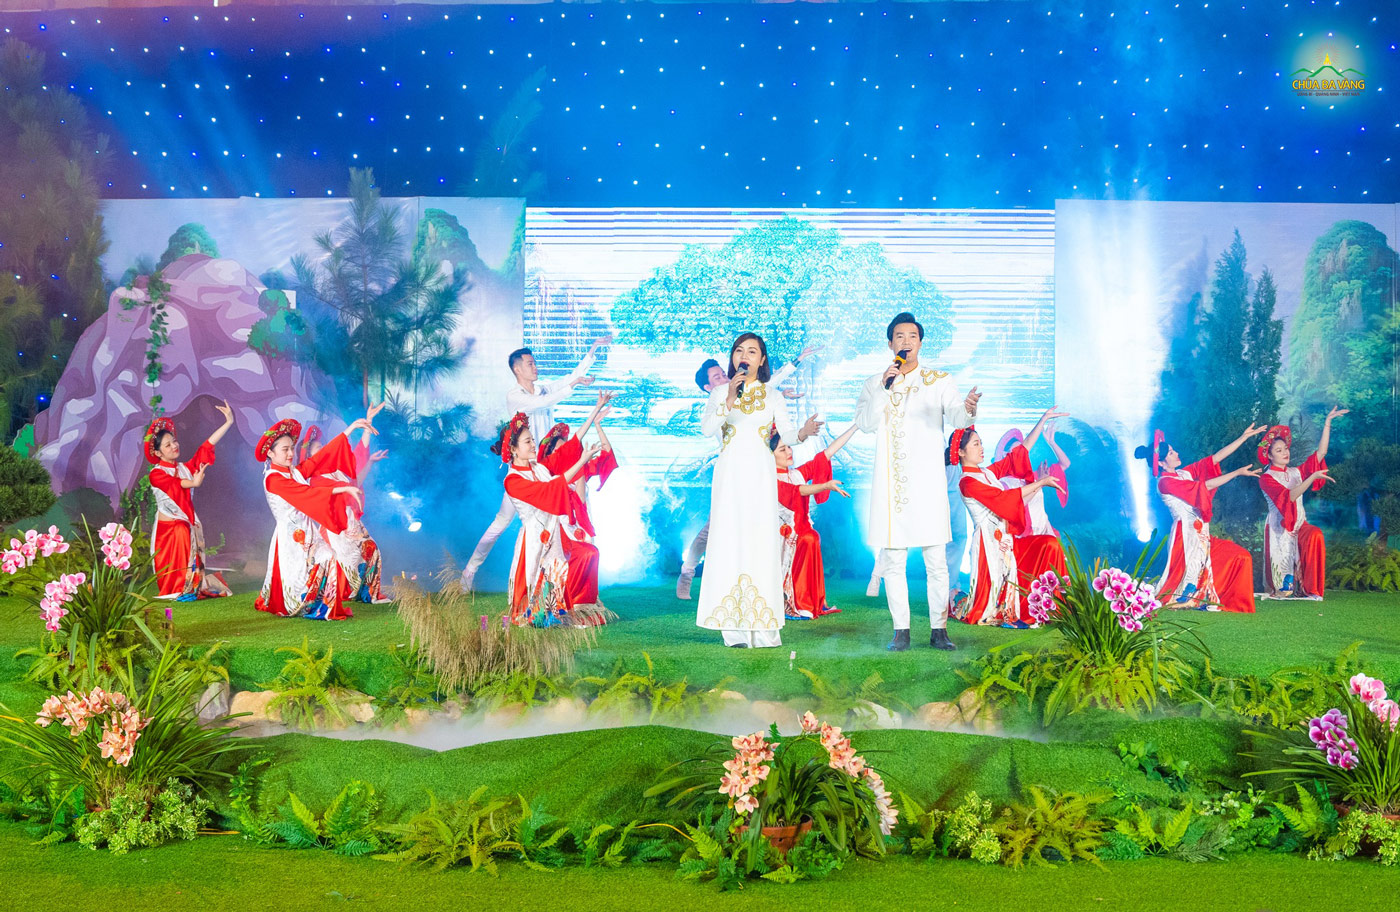 Ca sĩ Đức Thương, Huyền Trang cùng vũ đoàn Bamboo thể hiện bài hát 